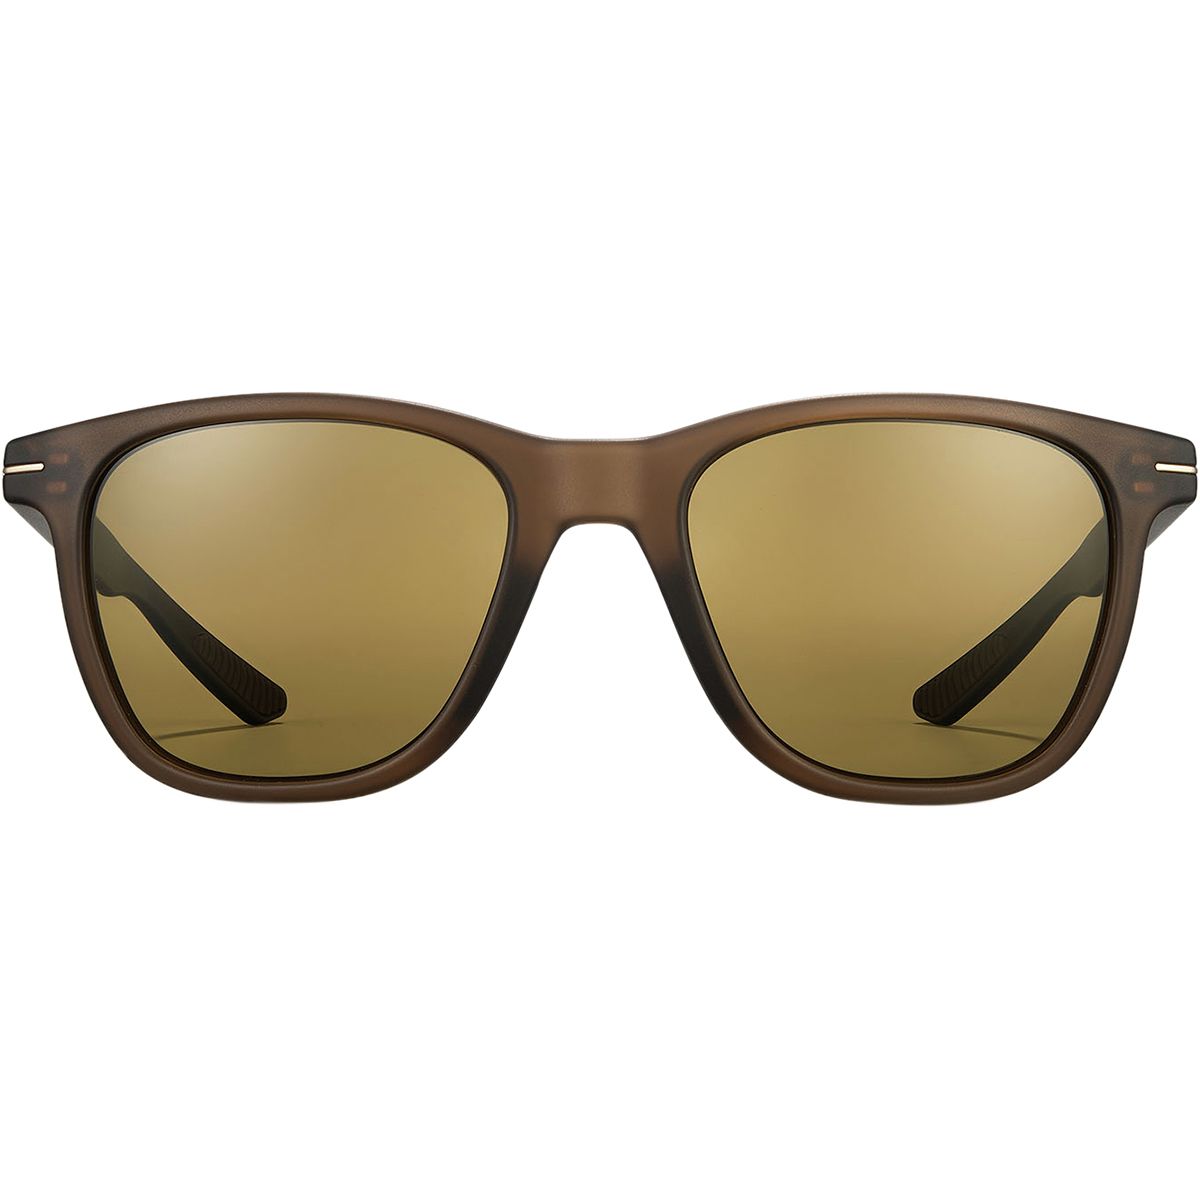 Roka Halsey Polarized Sunglasses - Men's